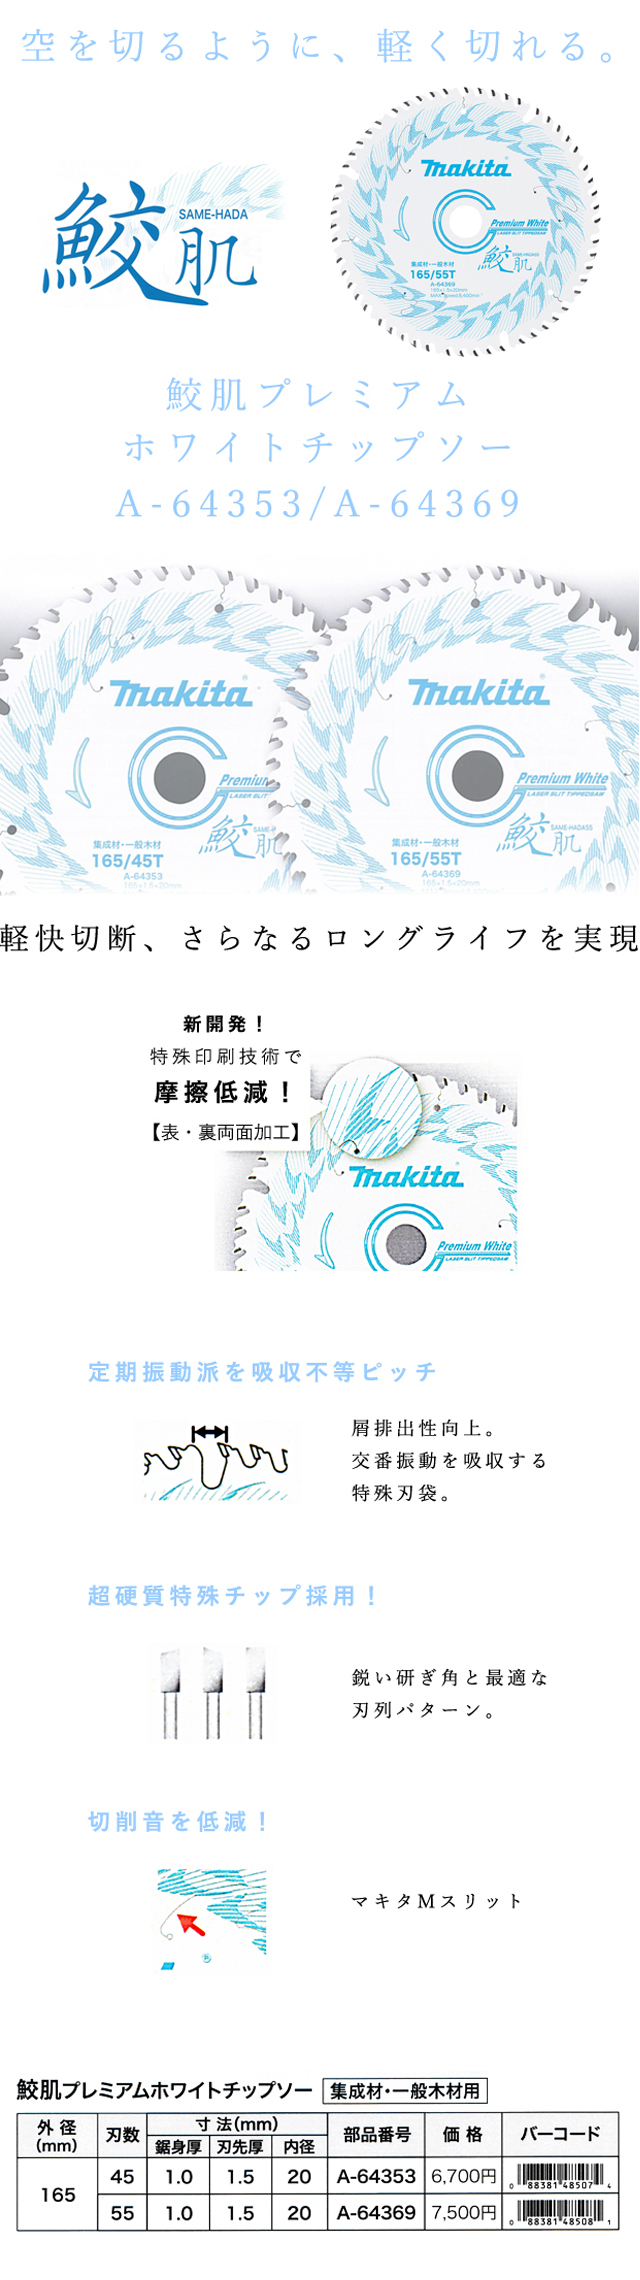 マキタ 鮫肌プレミアムホワイトチップソー【複数枚特価】 A-64353/A-64369